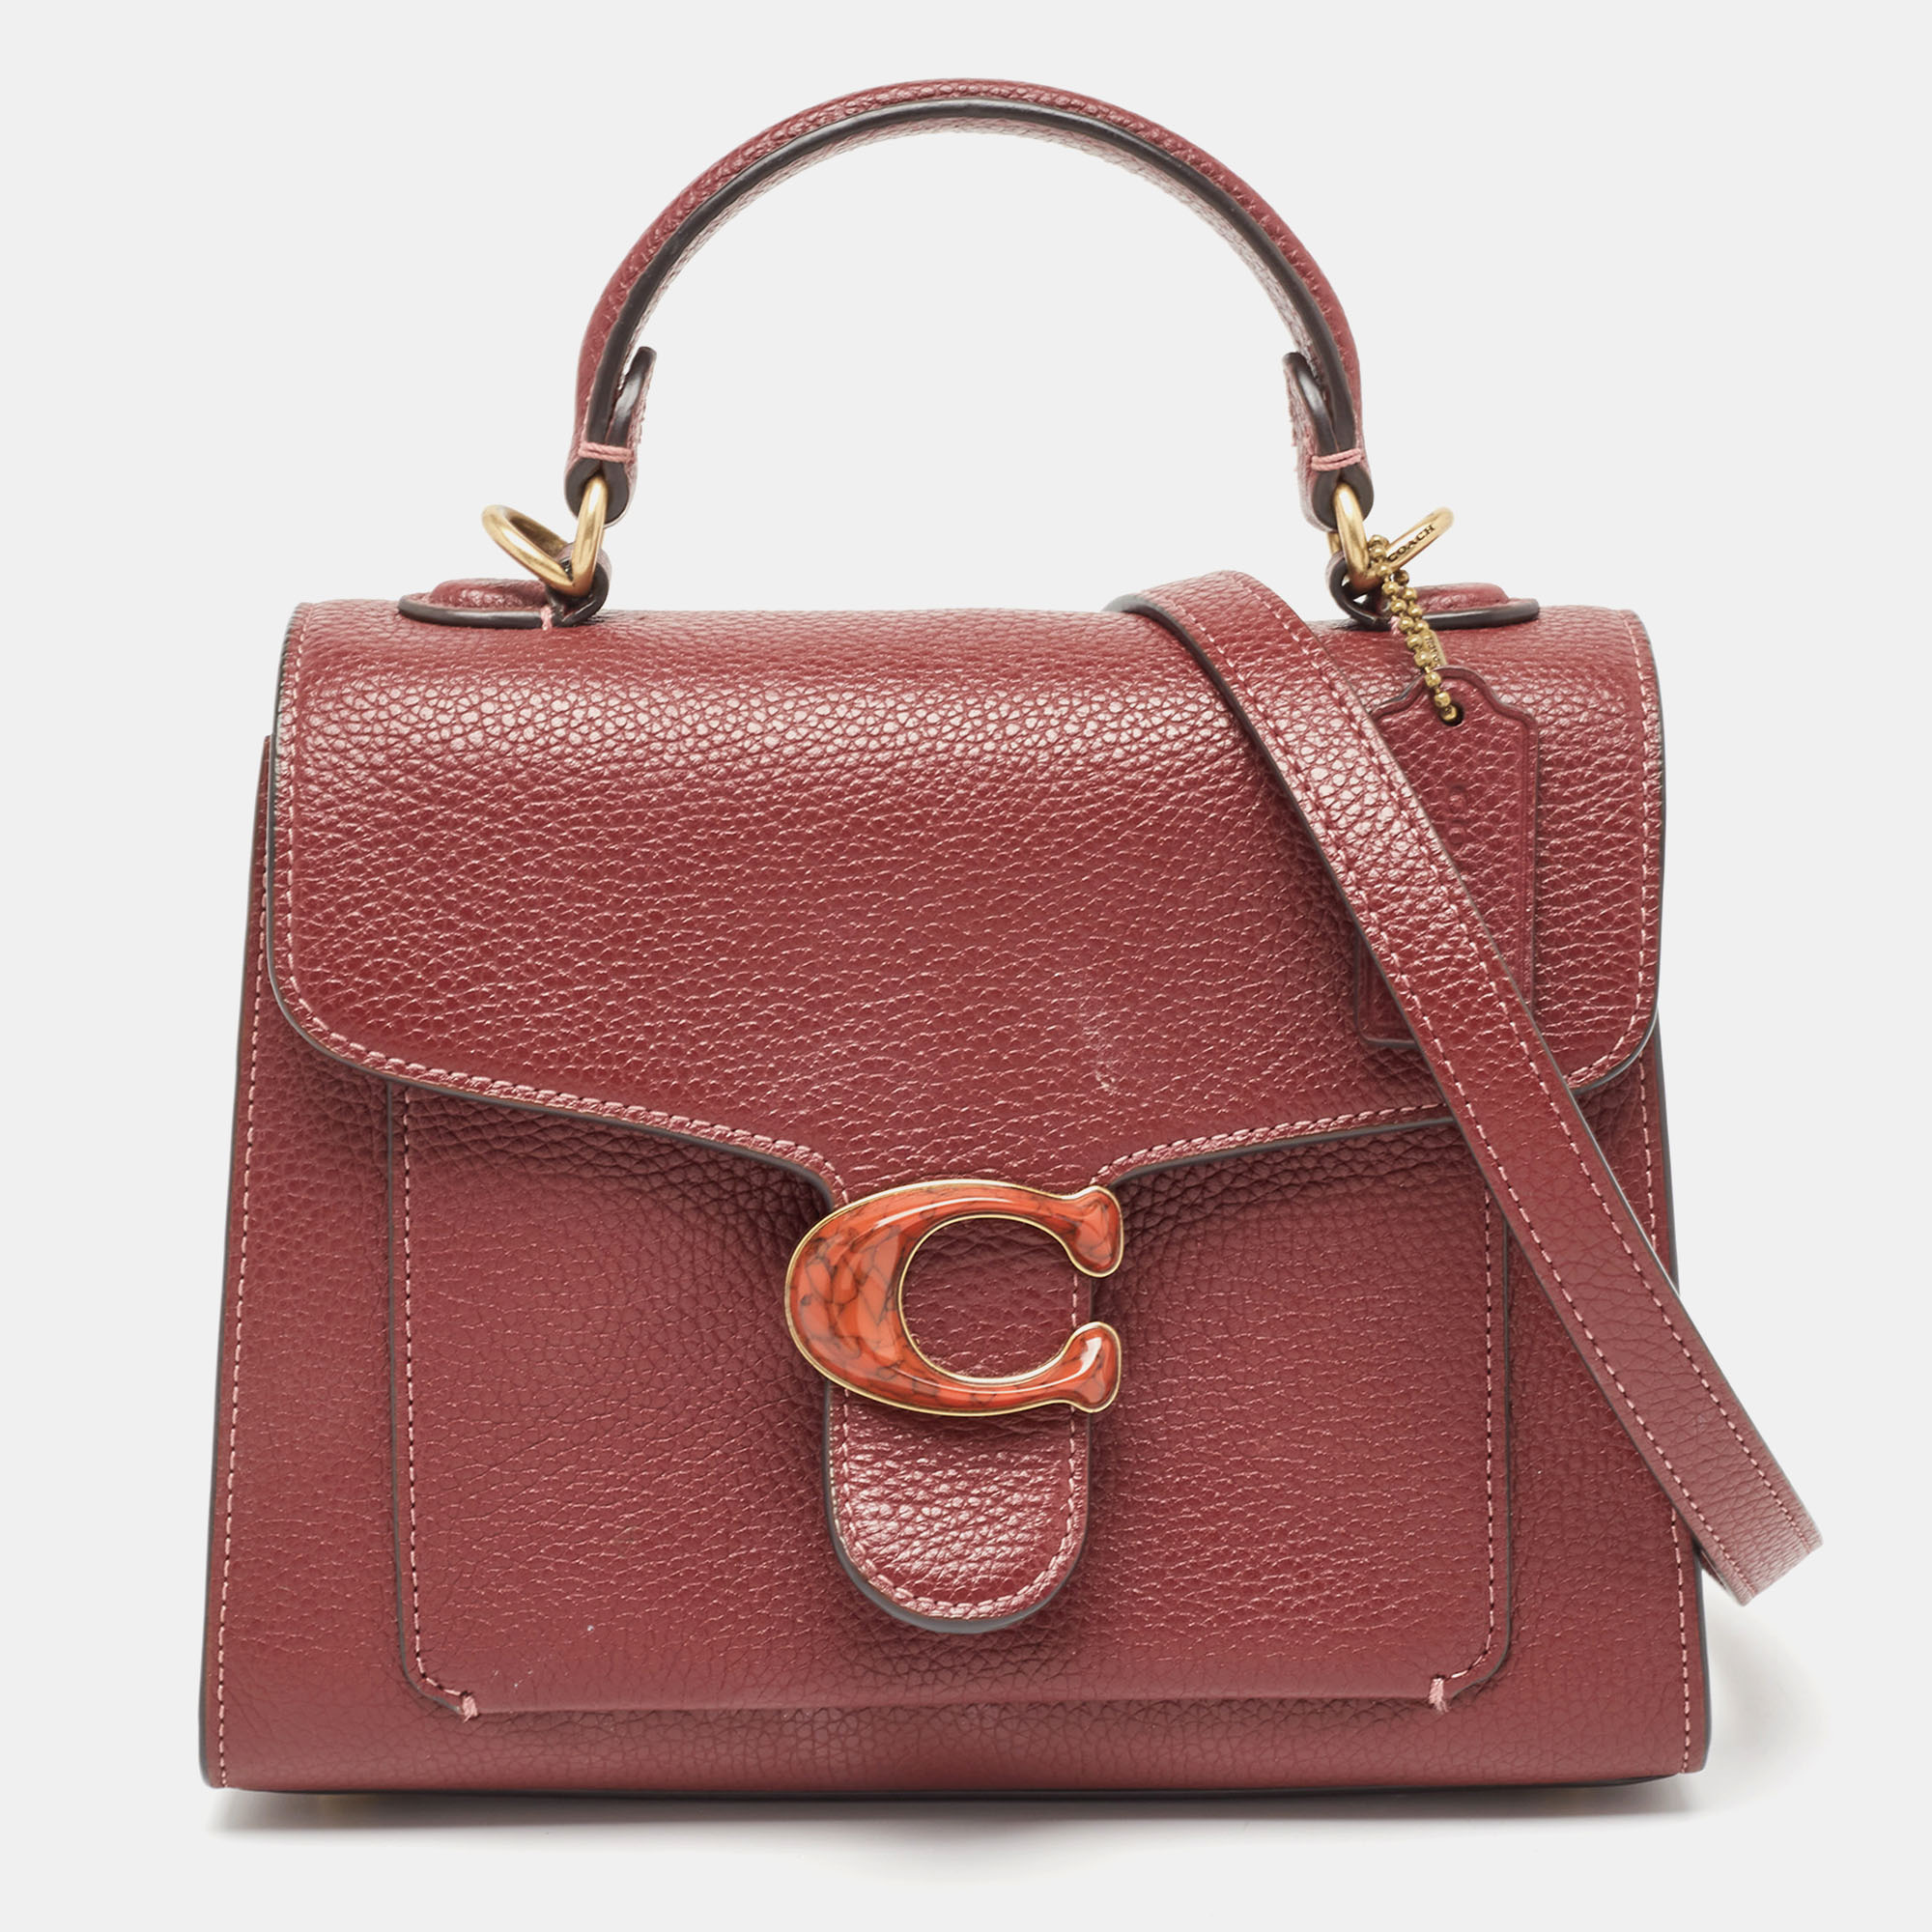 Coach burgundy leather tabby top handle bag